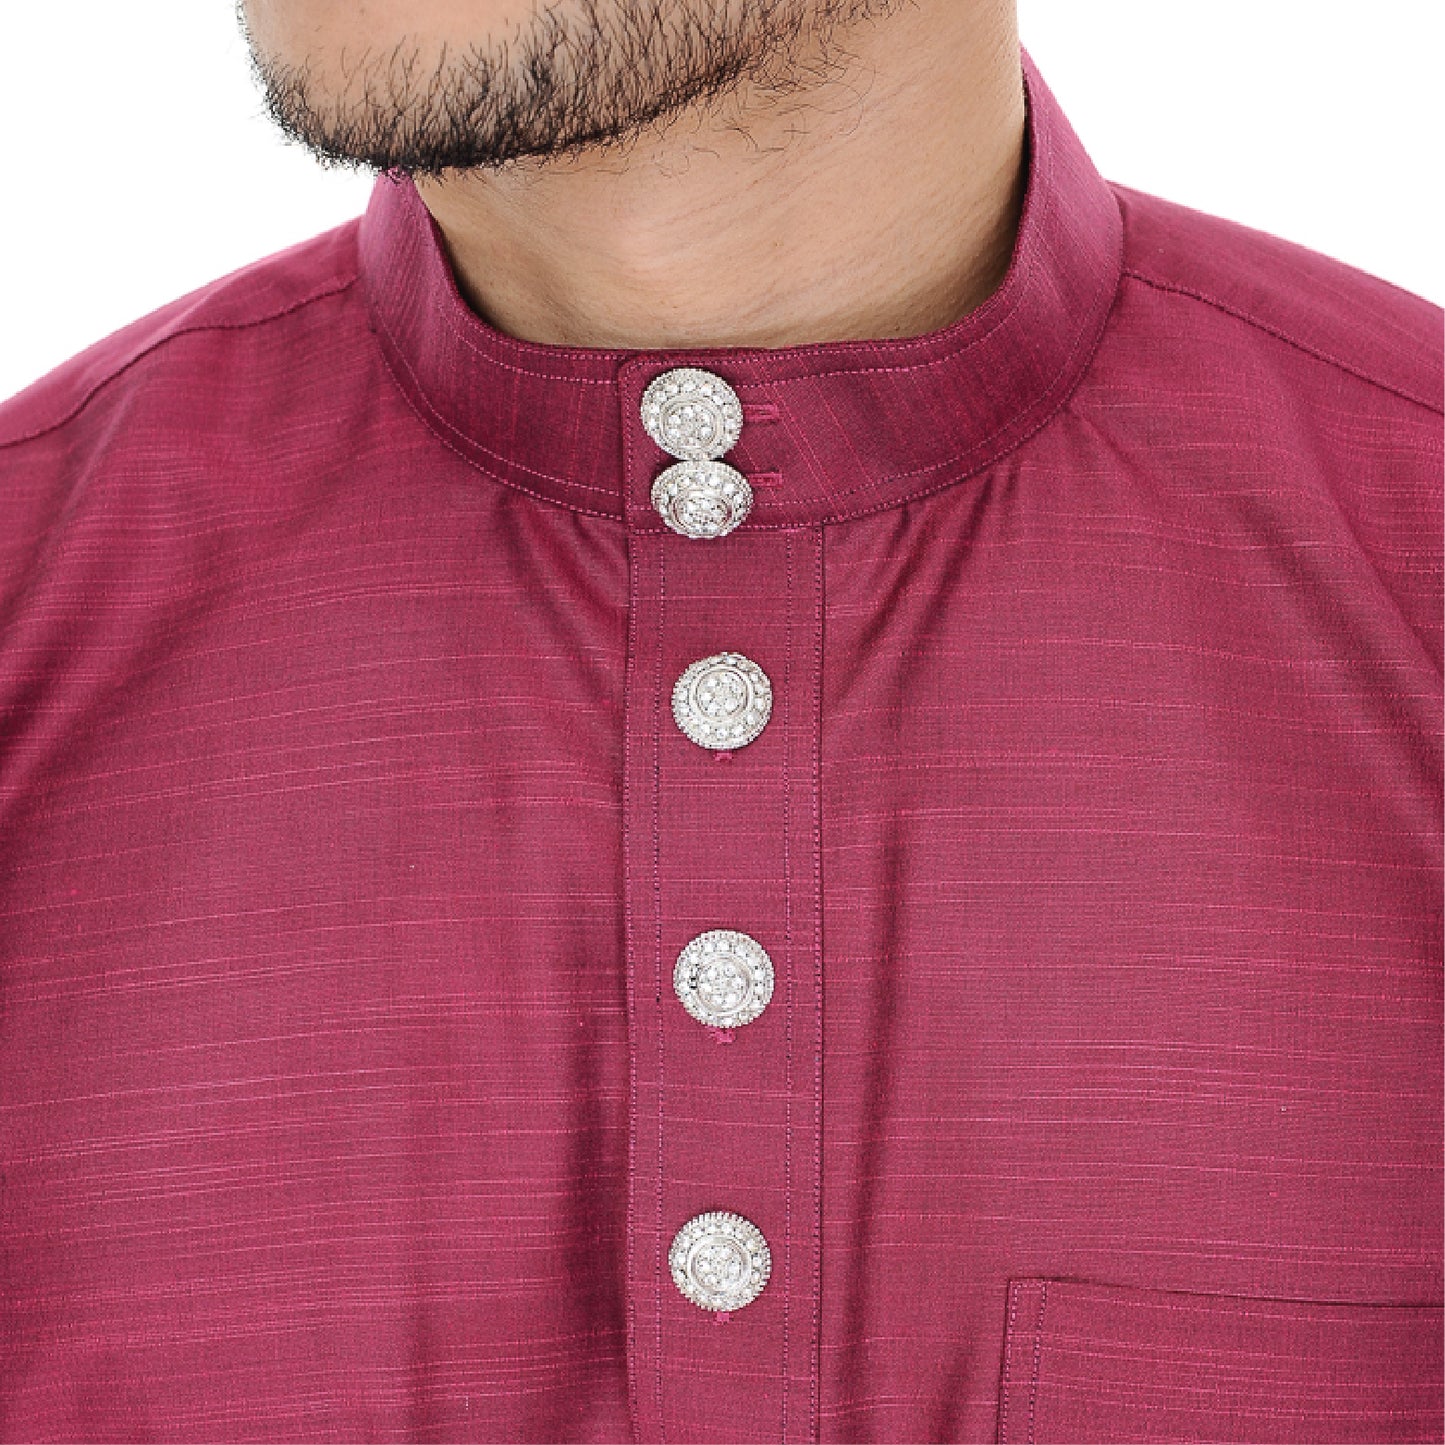 Baju Melayu Tenun Cotton Silk Magenta